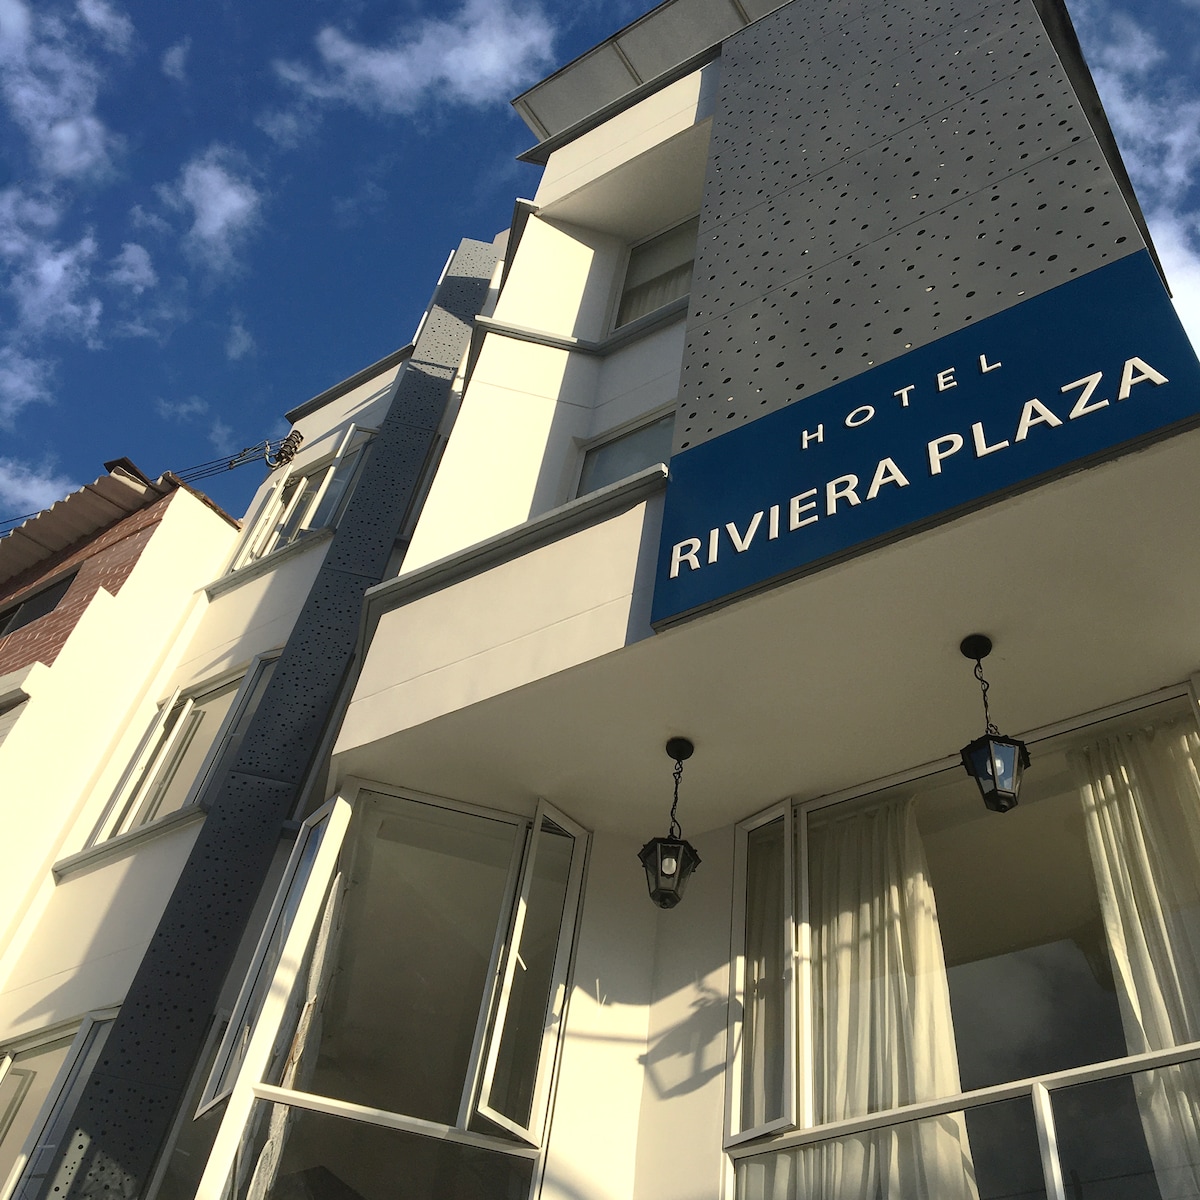 Apartamento-hotel Riviera Plaza